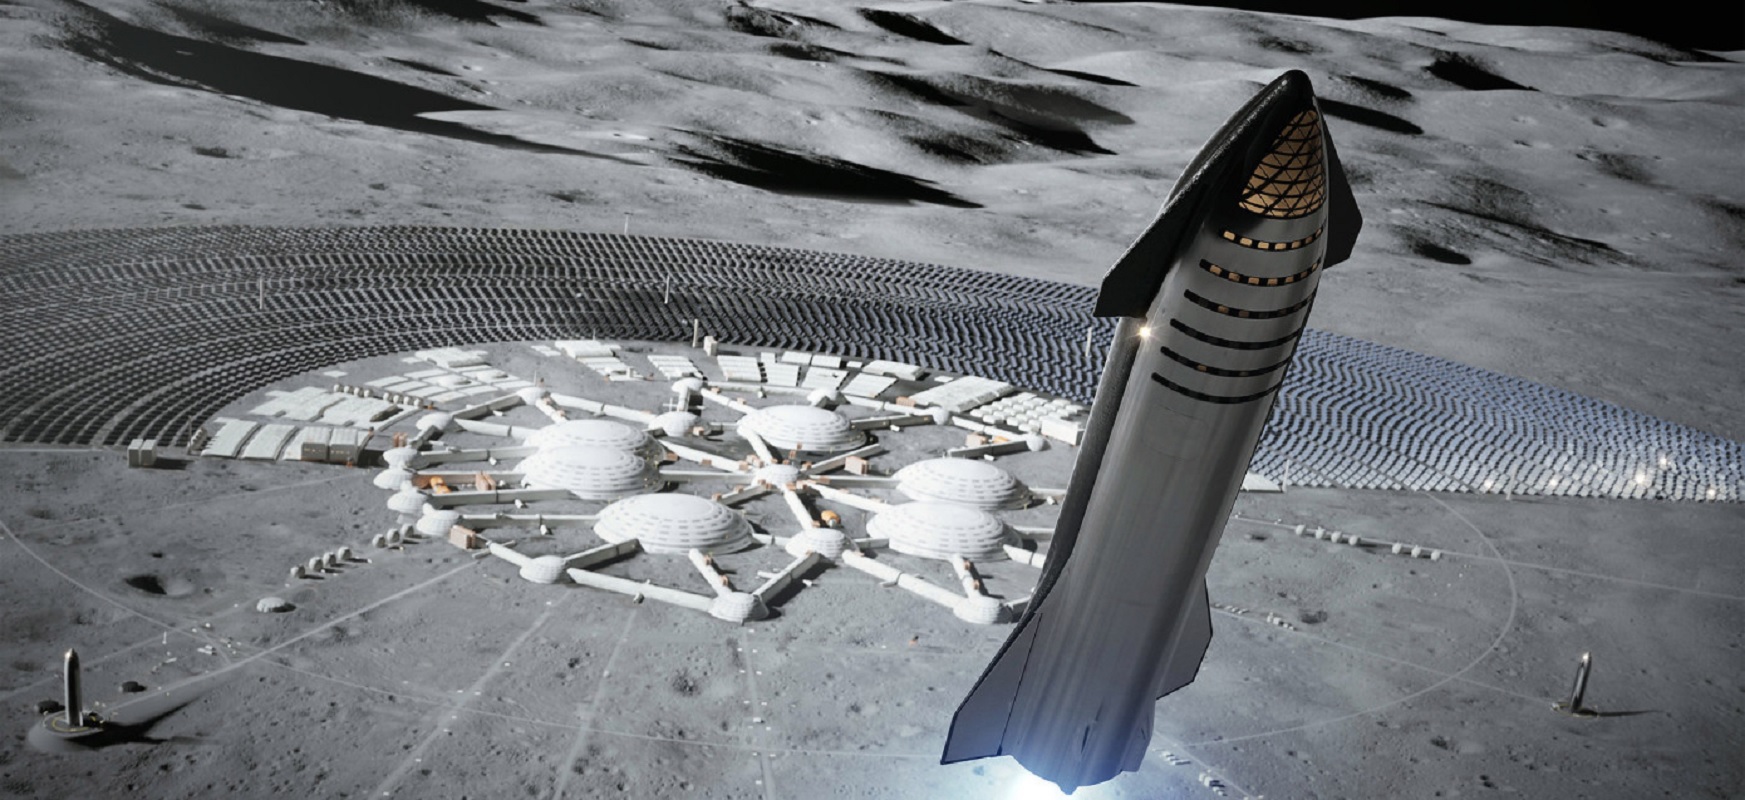 Elon Musk-ek honela dio: Starship eraikitzeko esku guztiak